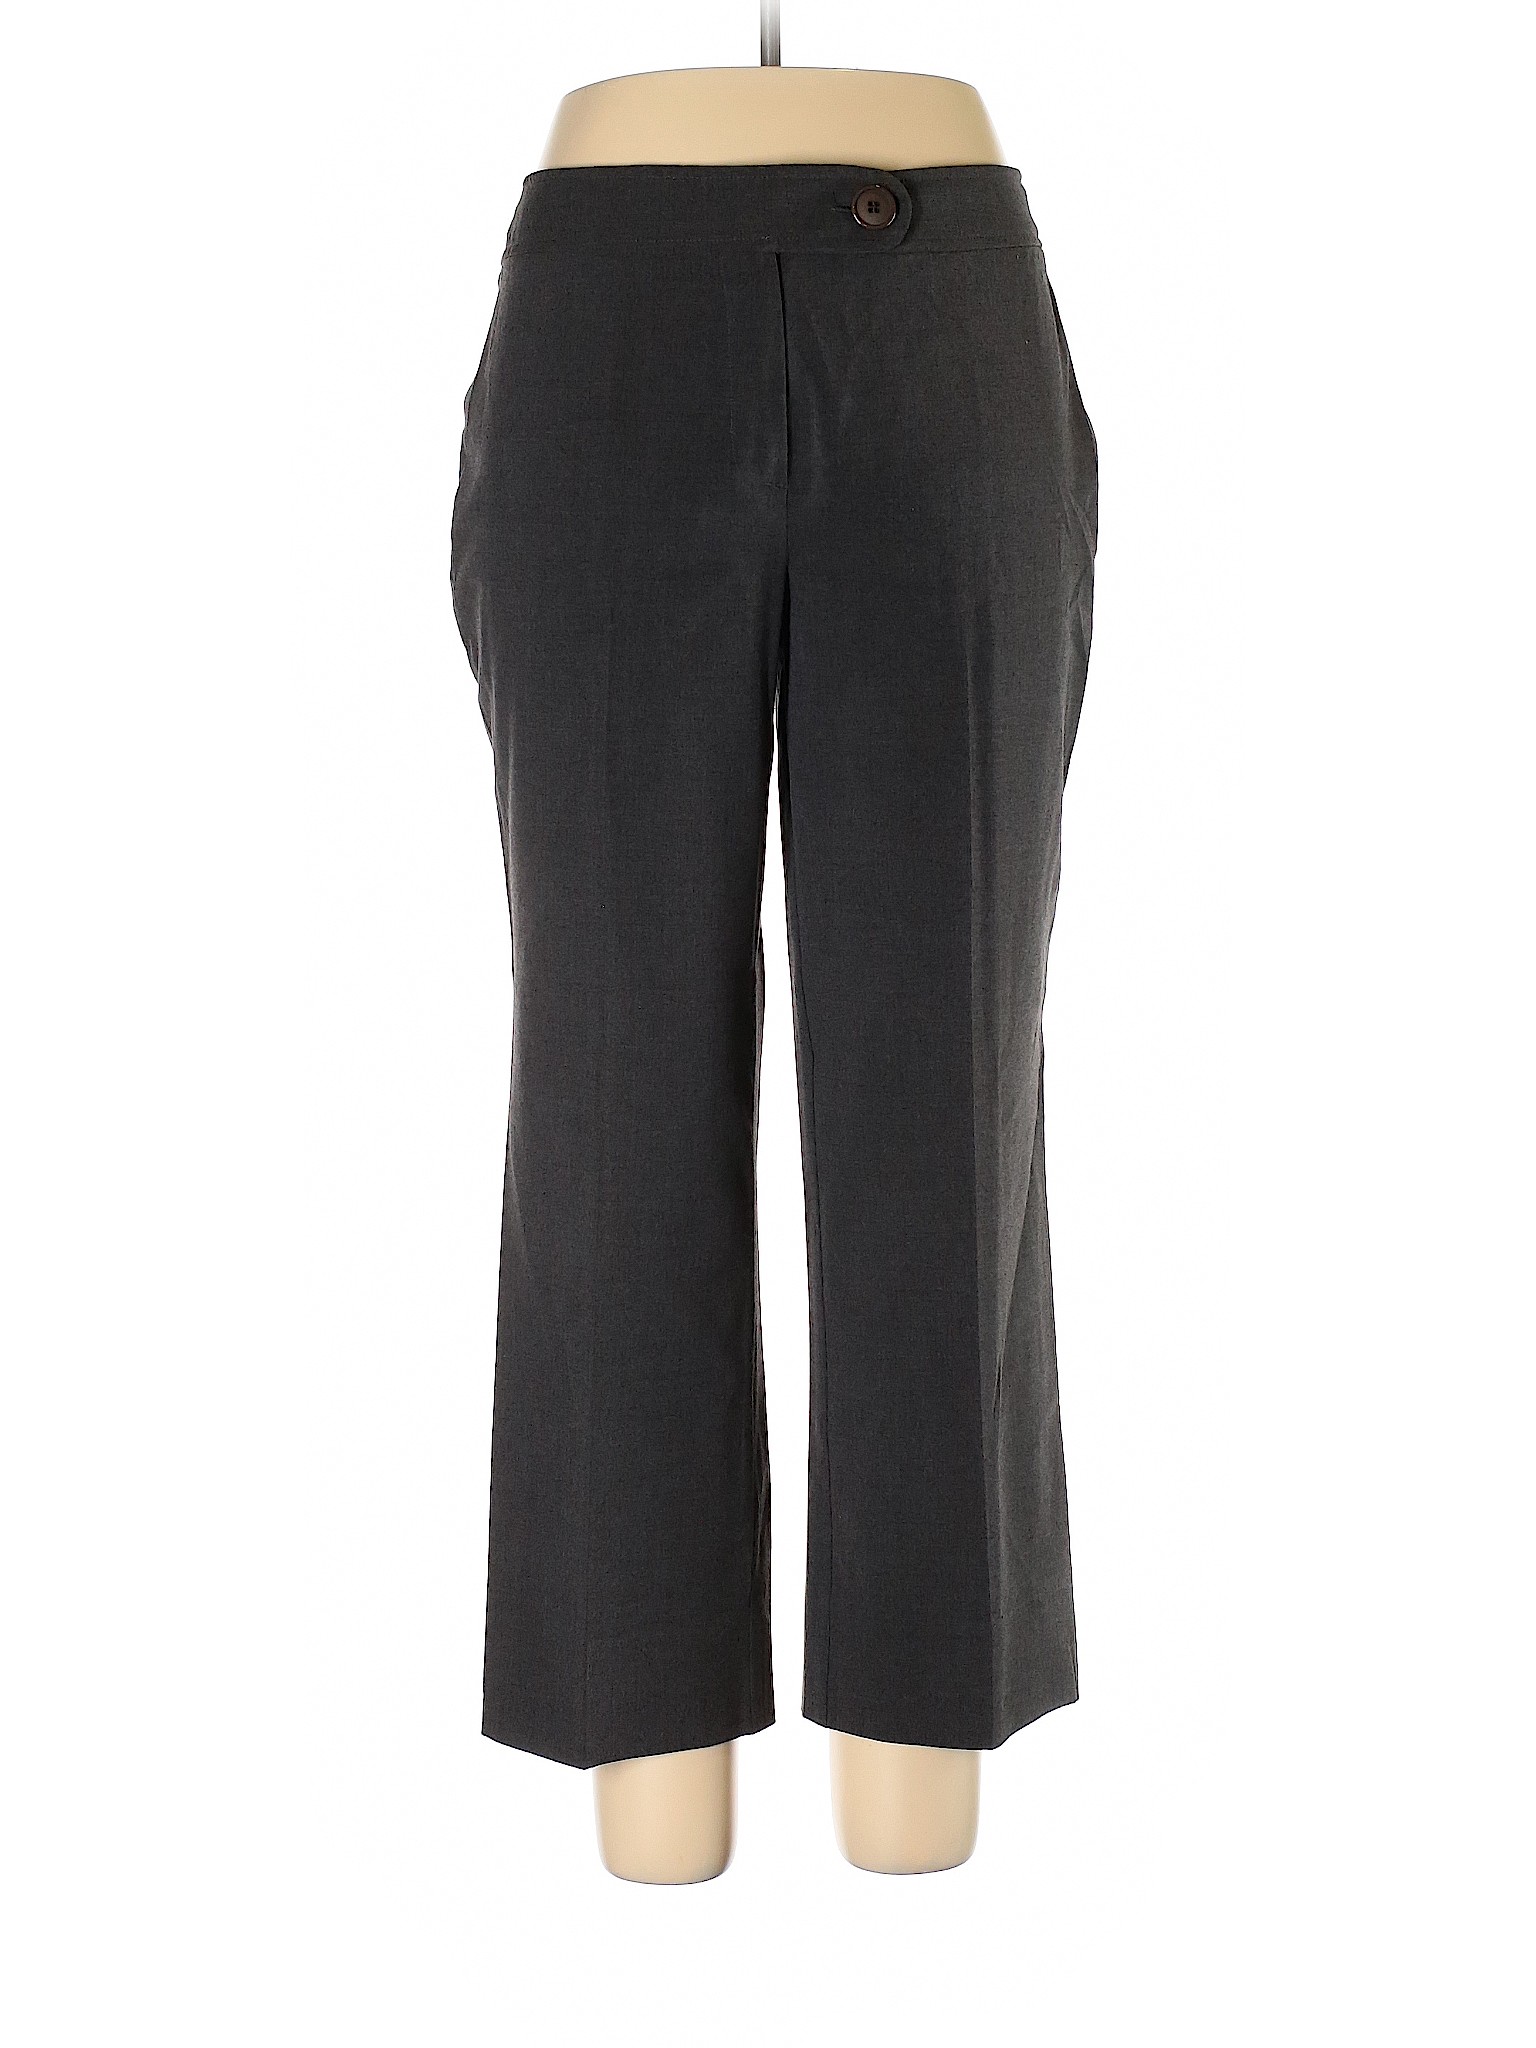 Pantology Women Black Dress Pants 14 | eBay